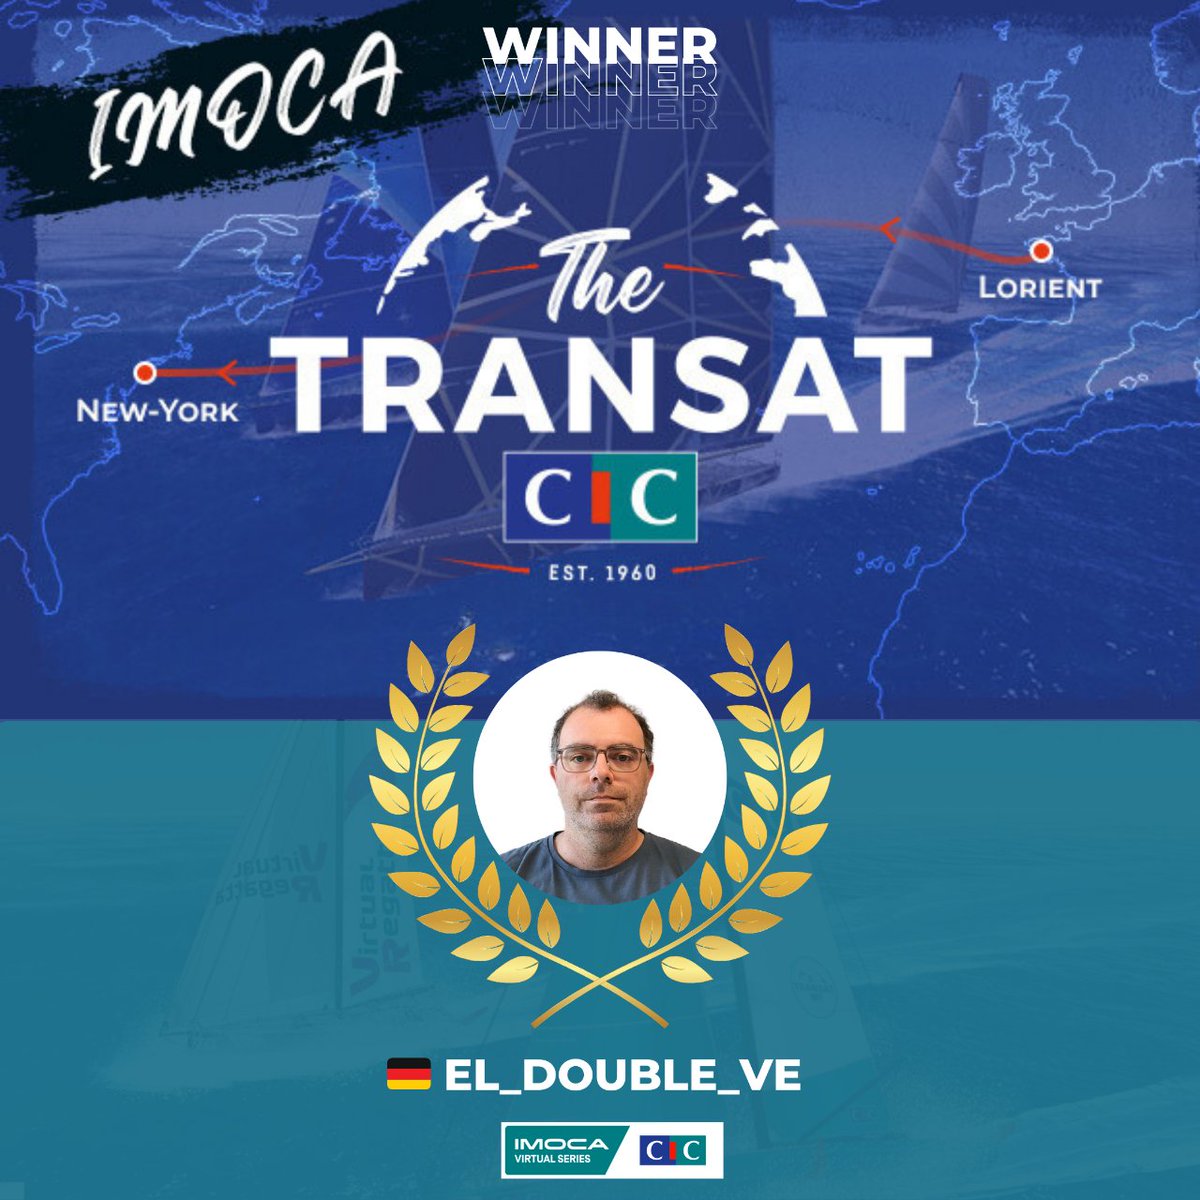 L'e-skipper allemand El_Double_Ve remporte @The_Transat_CIC en classe IMOCA et prend également la tête du classement de l'IMOCA Virtual Series by CIC 🥇

L'attente est à son comble pour le prochain défi : la course New York Vendée Les Sables, qui débutera le 29 mai 🌏